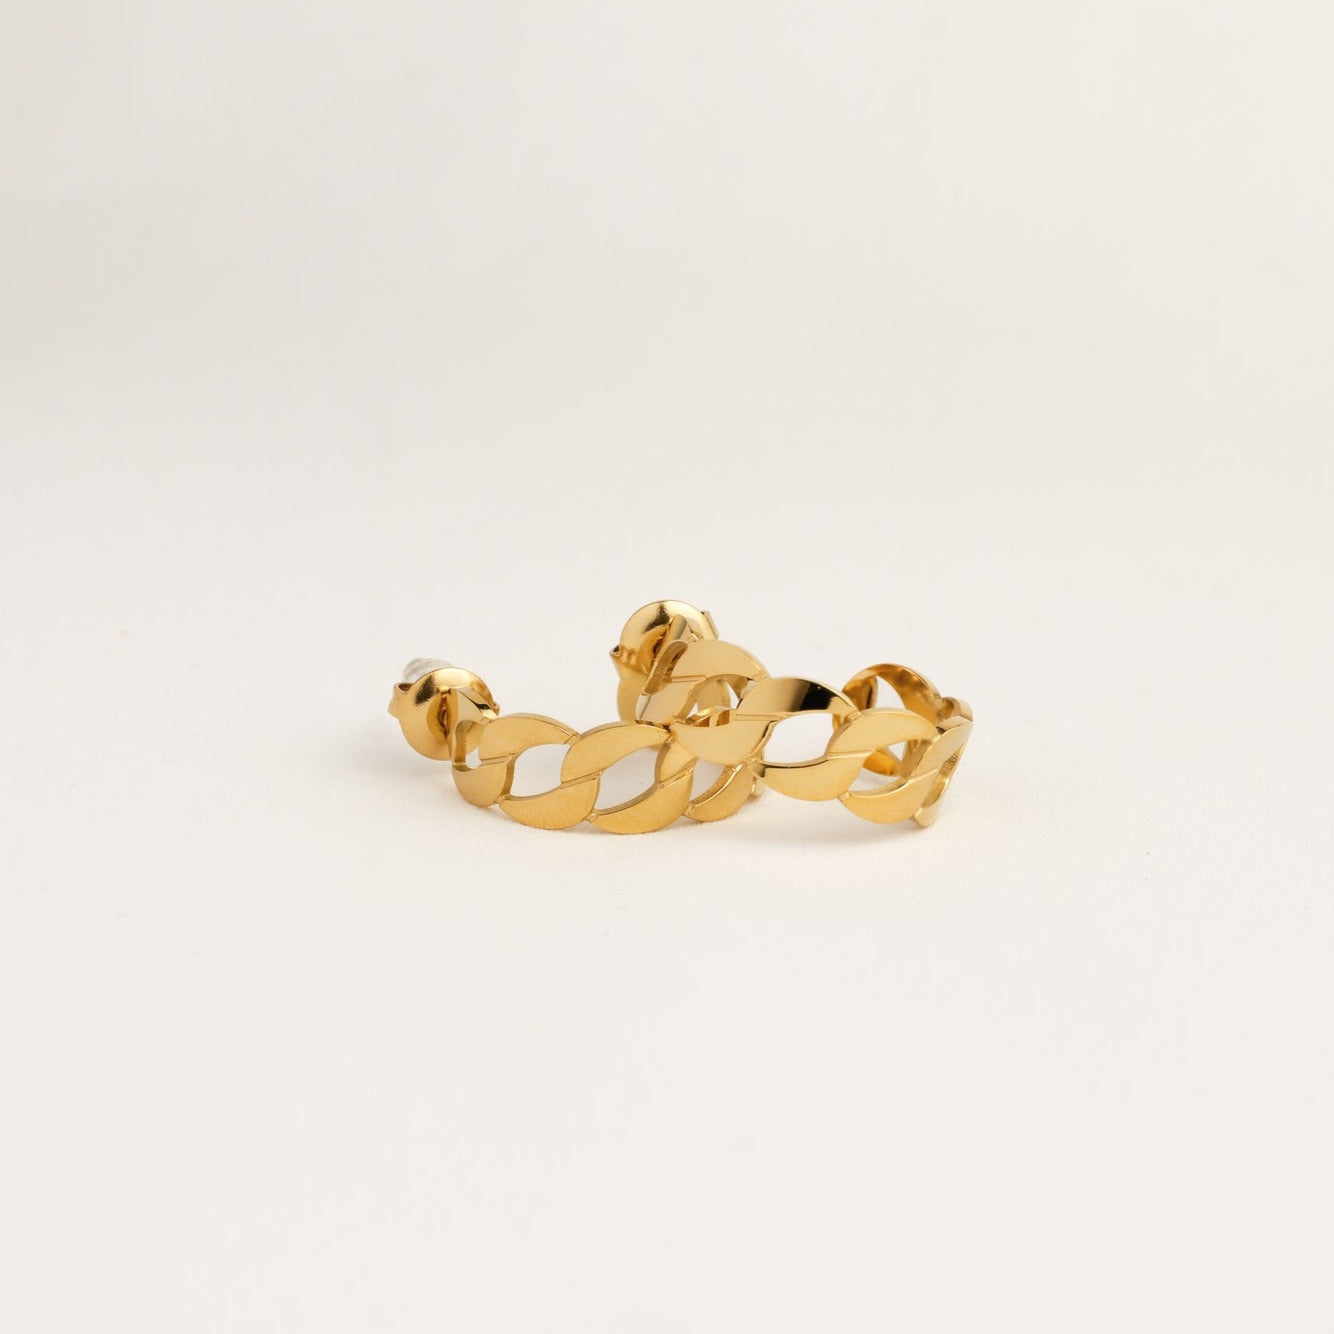 Womens Gold Hoop Pattern Earrings